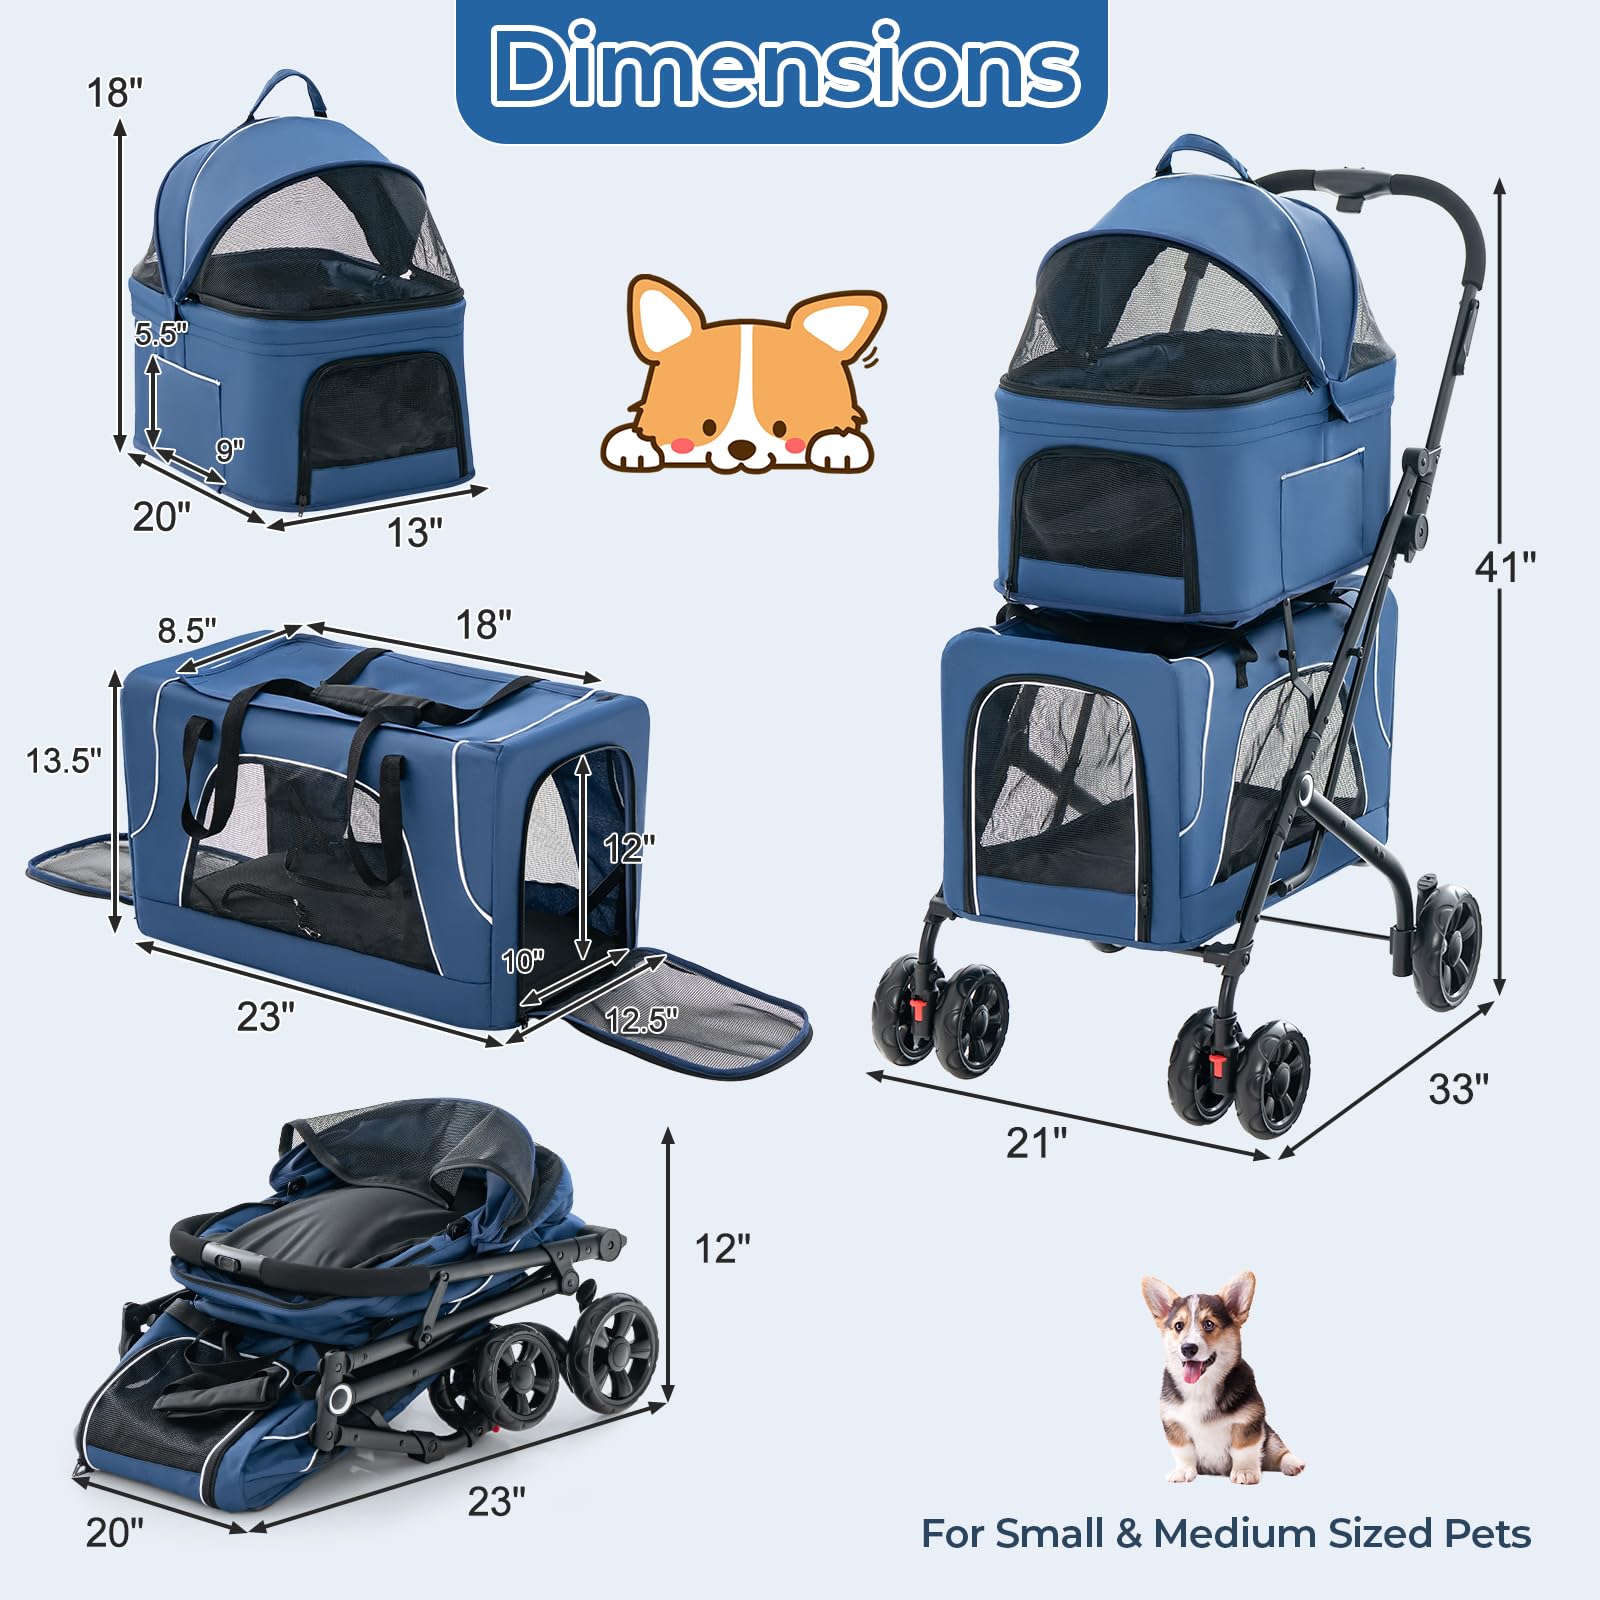 Giantex Double Dog Stroller - Pet Stroller for 2 Dogs